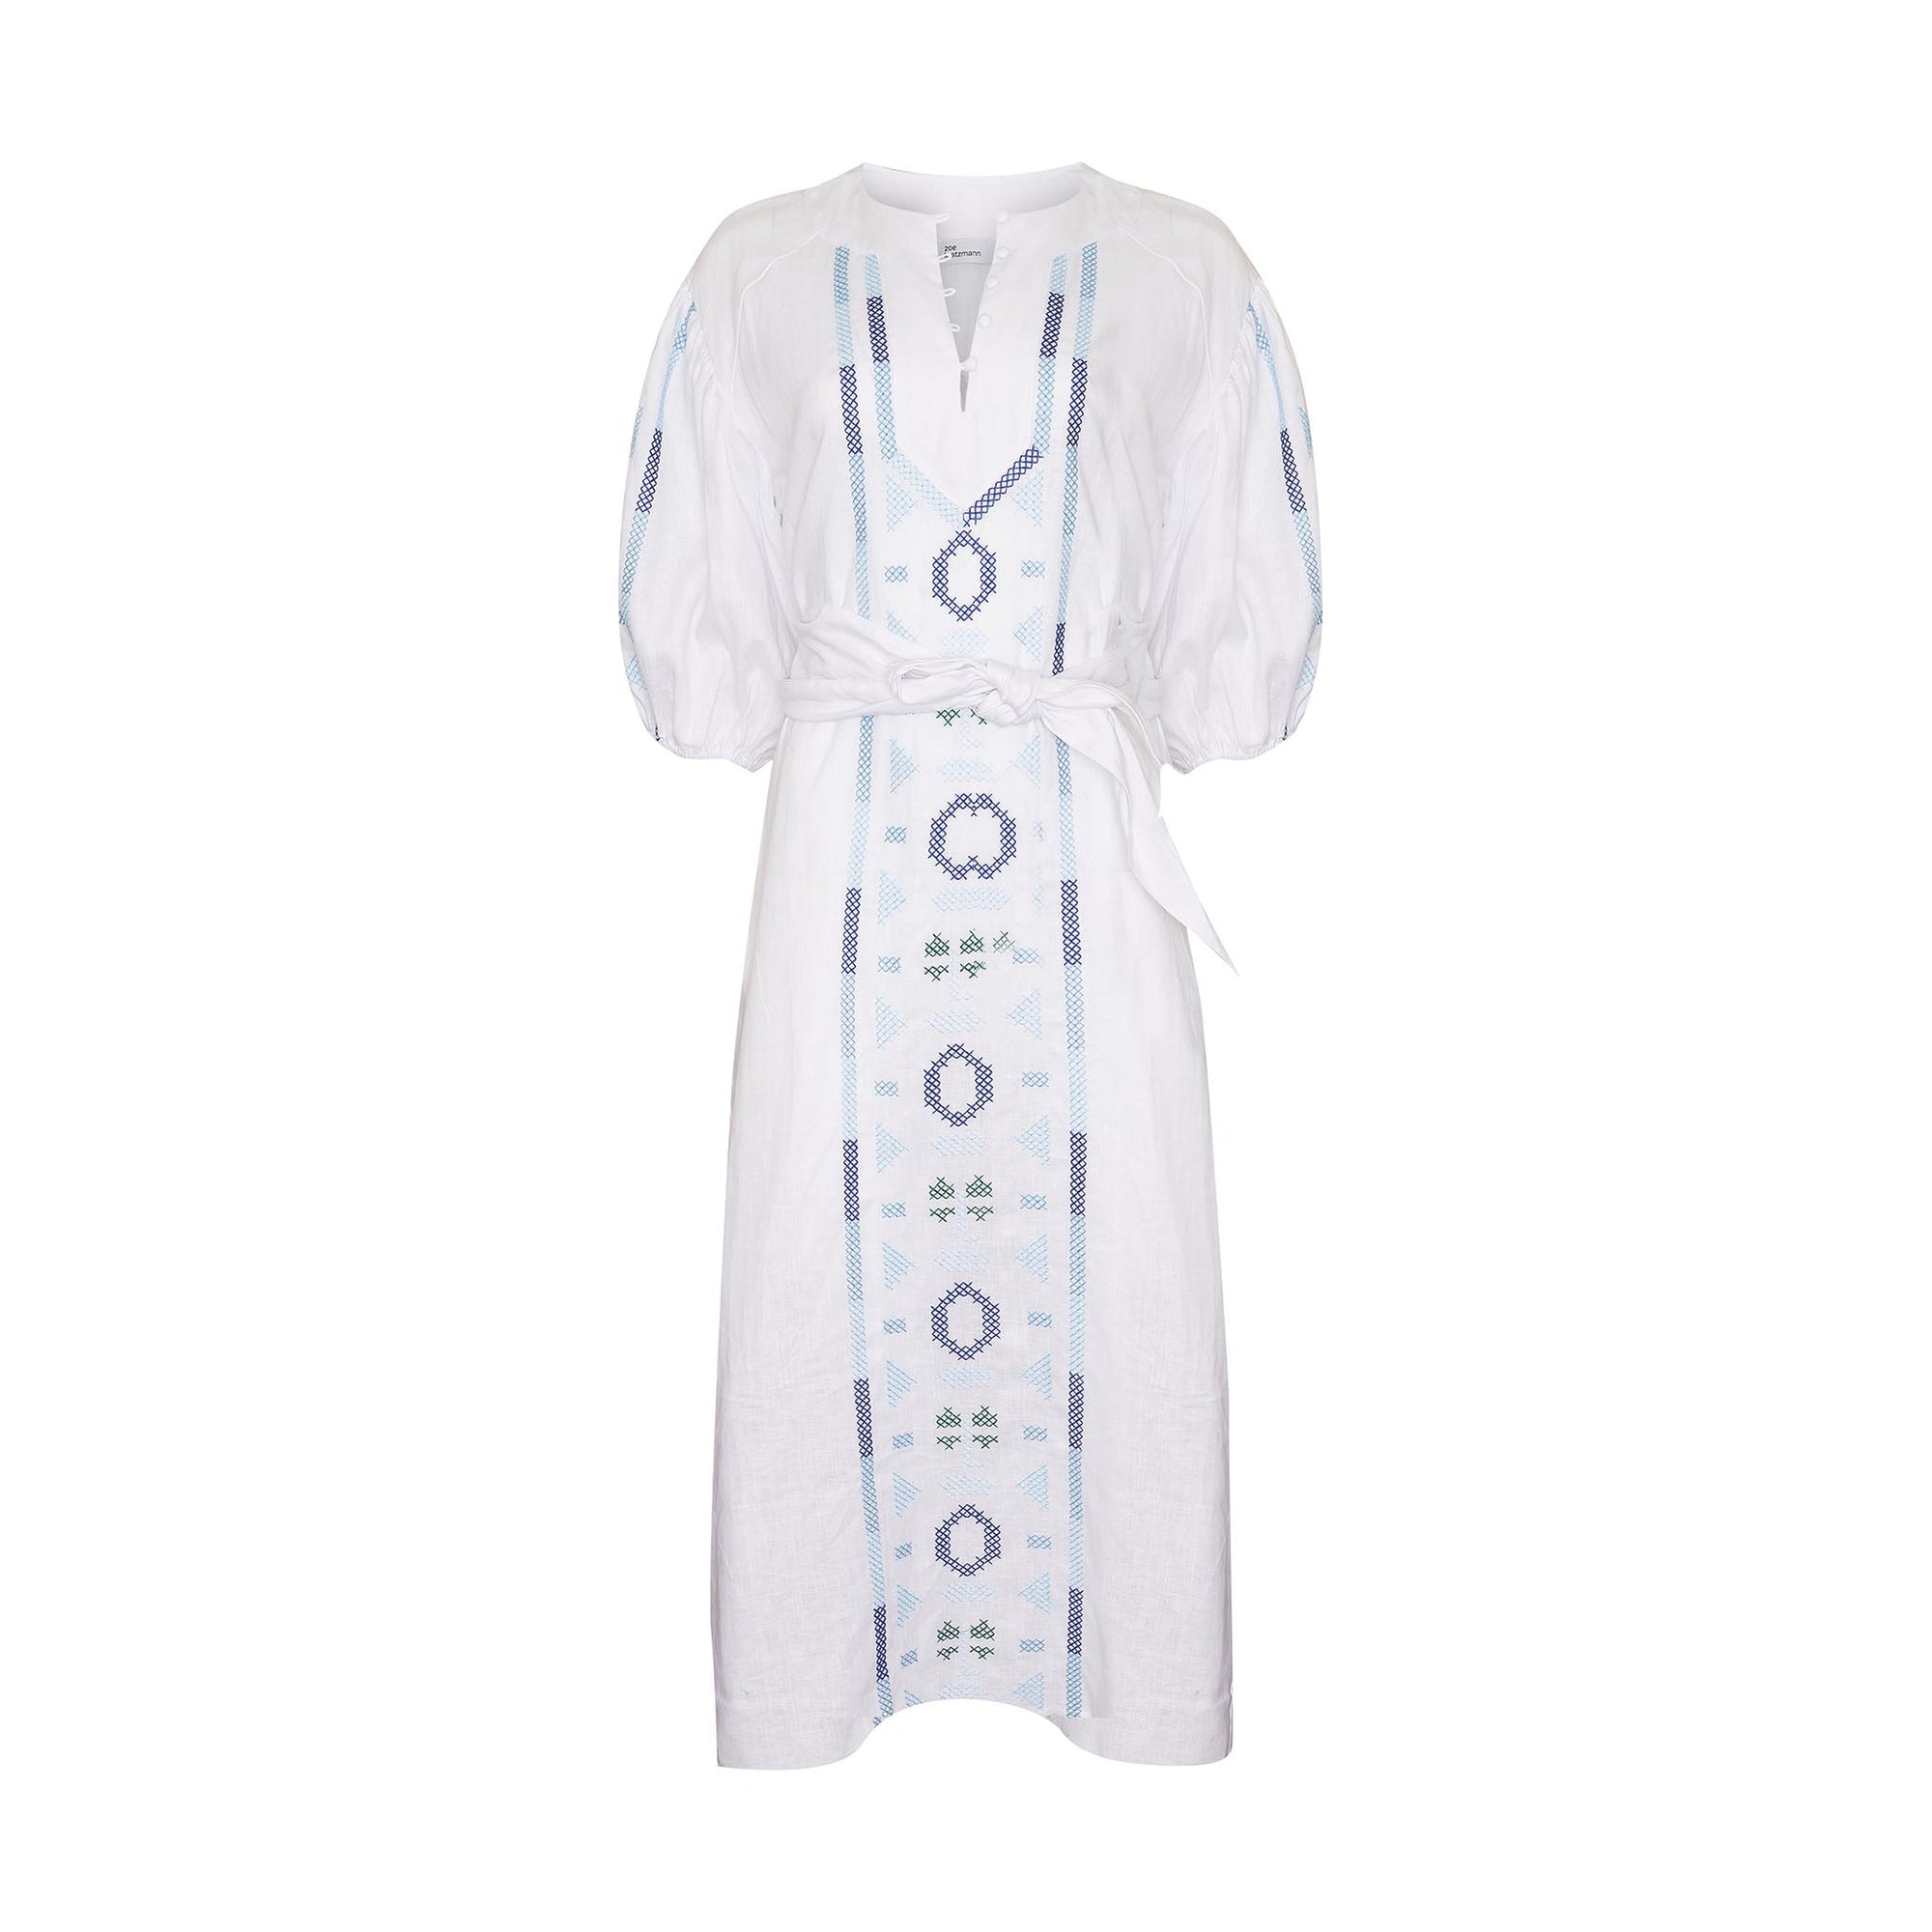 Limbo Dress - Azure embroid